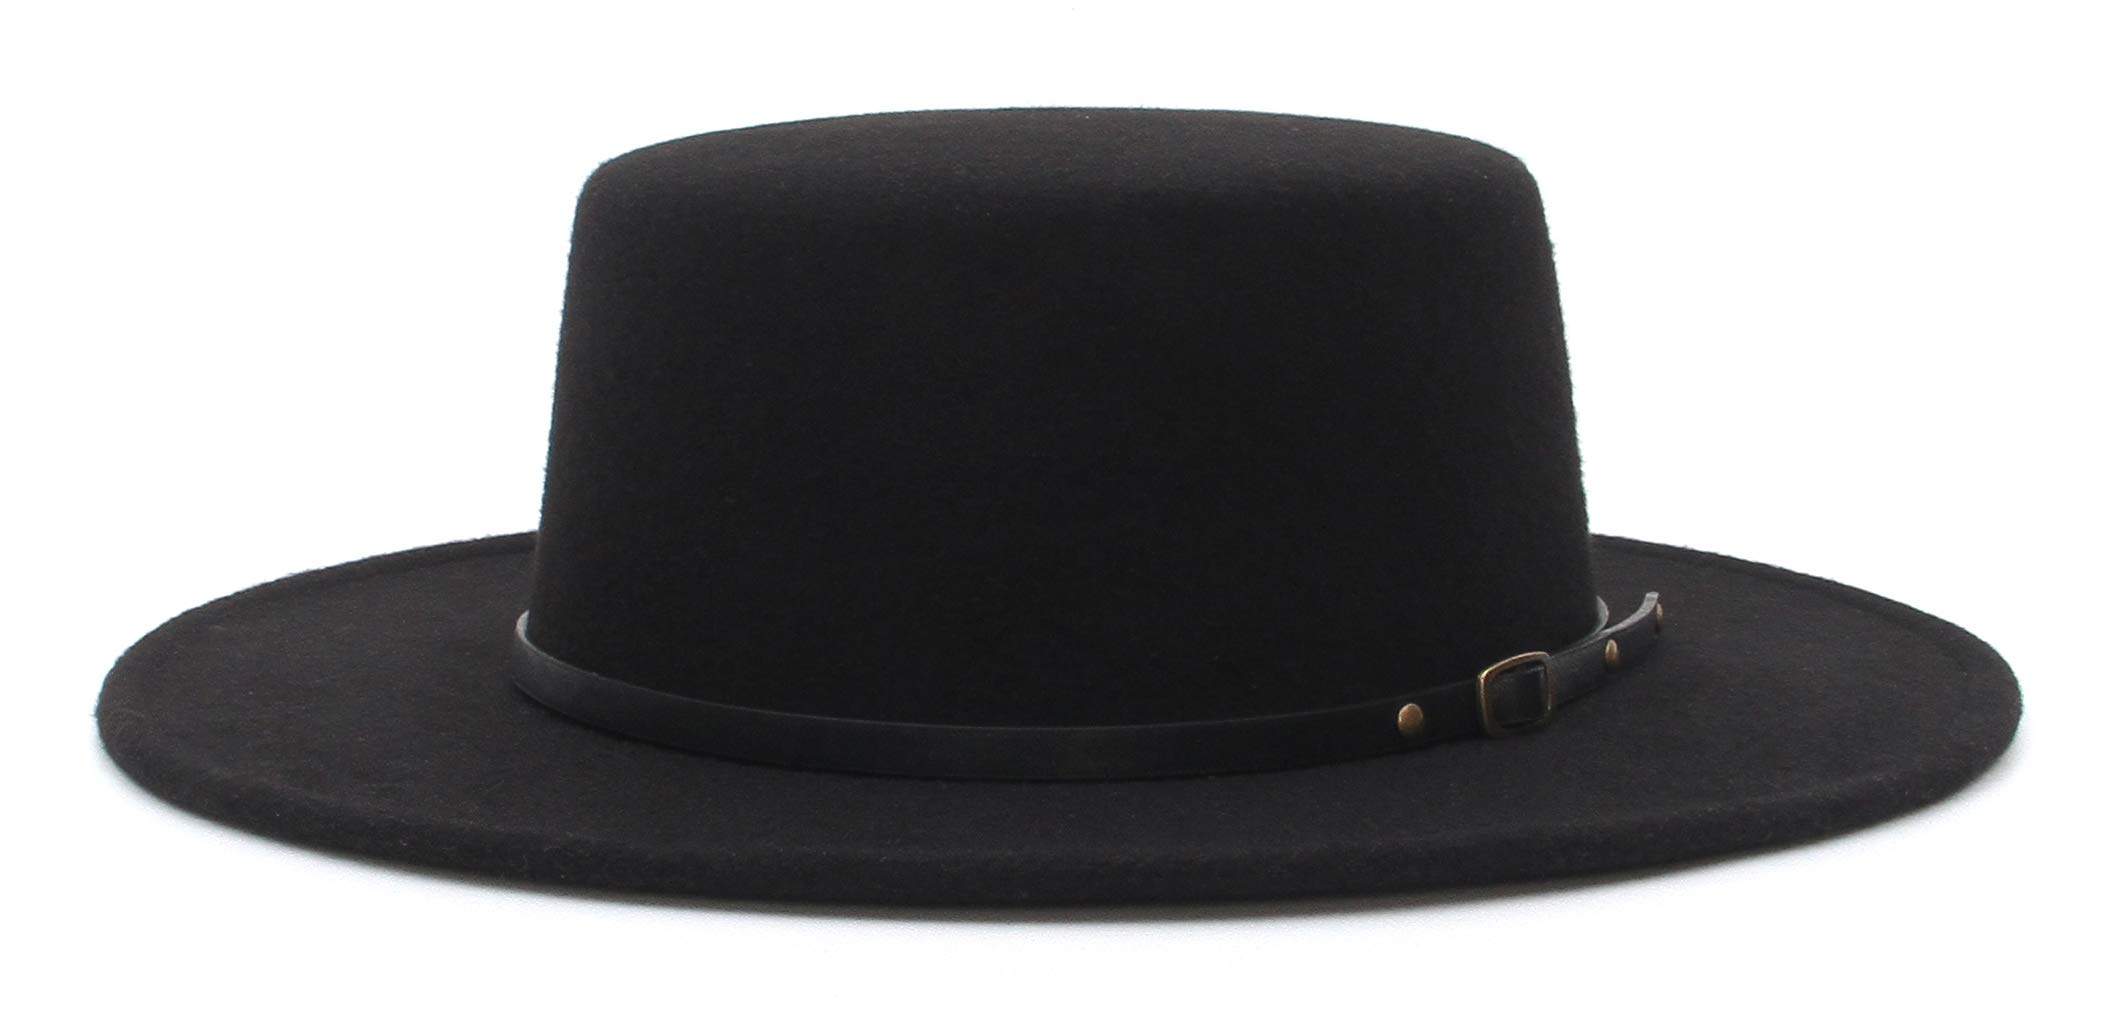 EOZY Fedora-Hut für Damen und Herren, aus Filz, breite Krempe, Flache Oberseite, Jazz, Panama-Hut, lässige Party, Kirche, Style-e, 57 EU